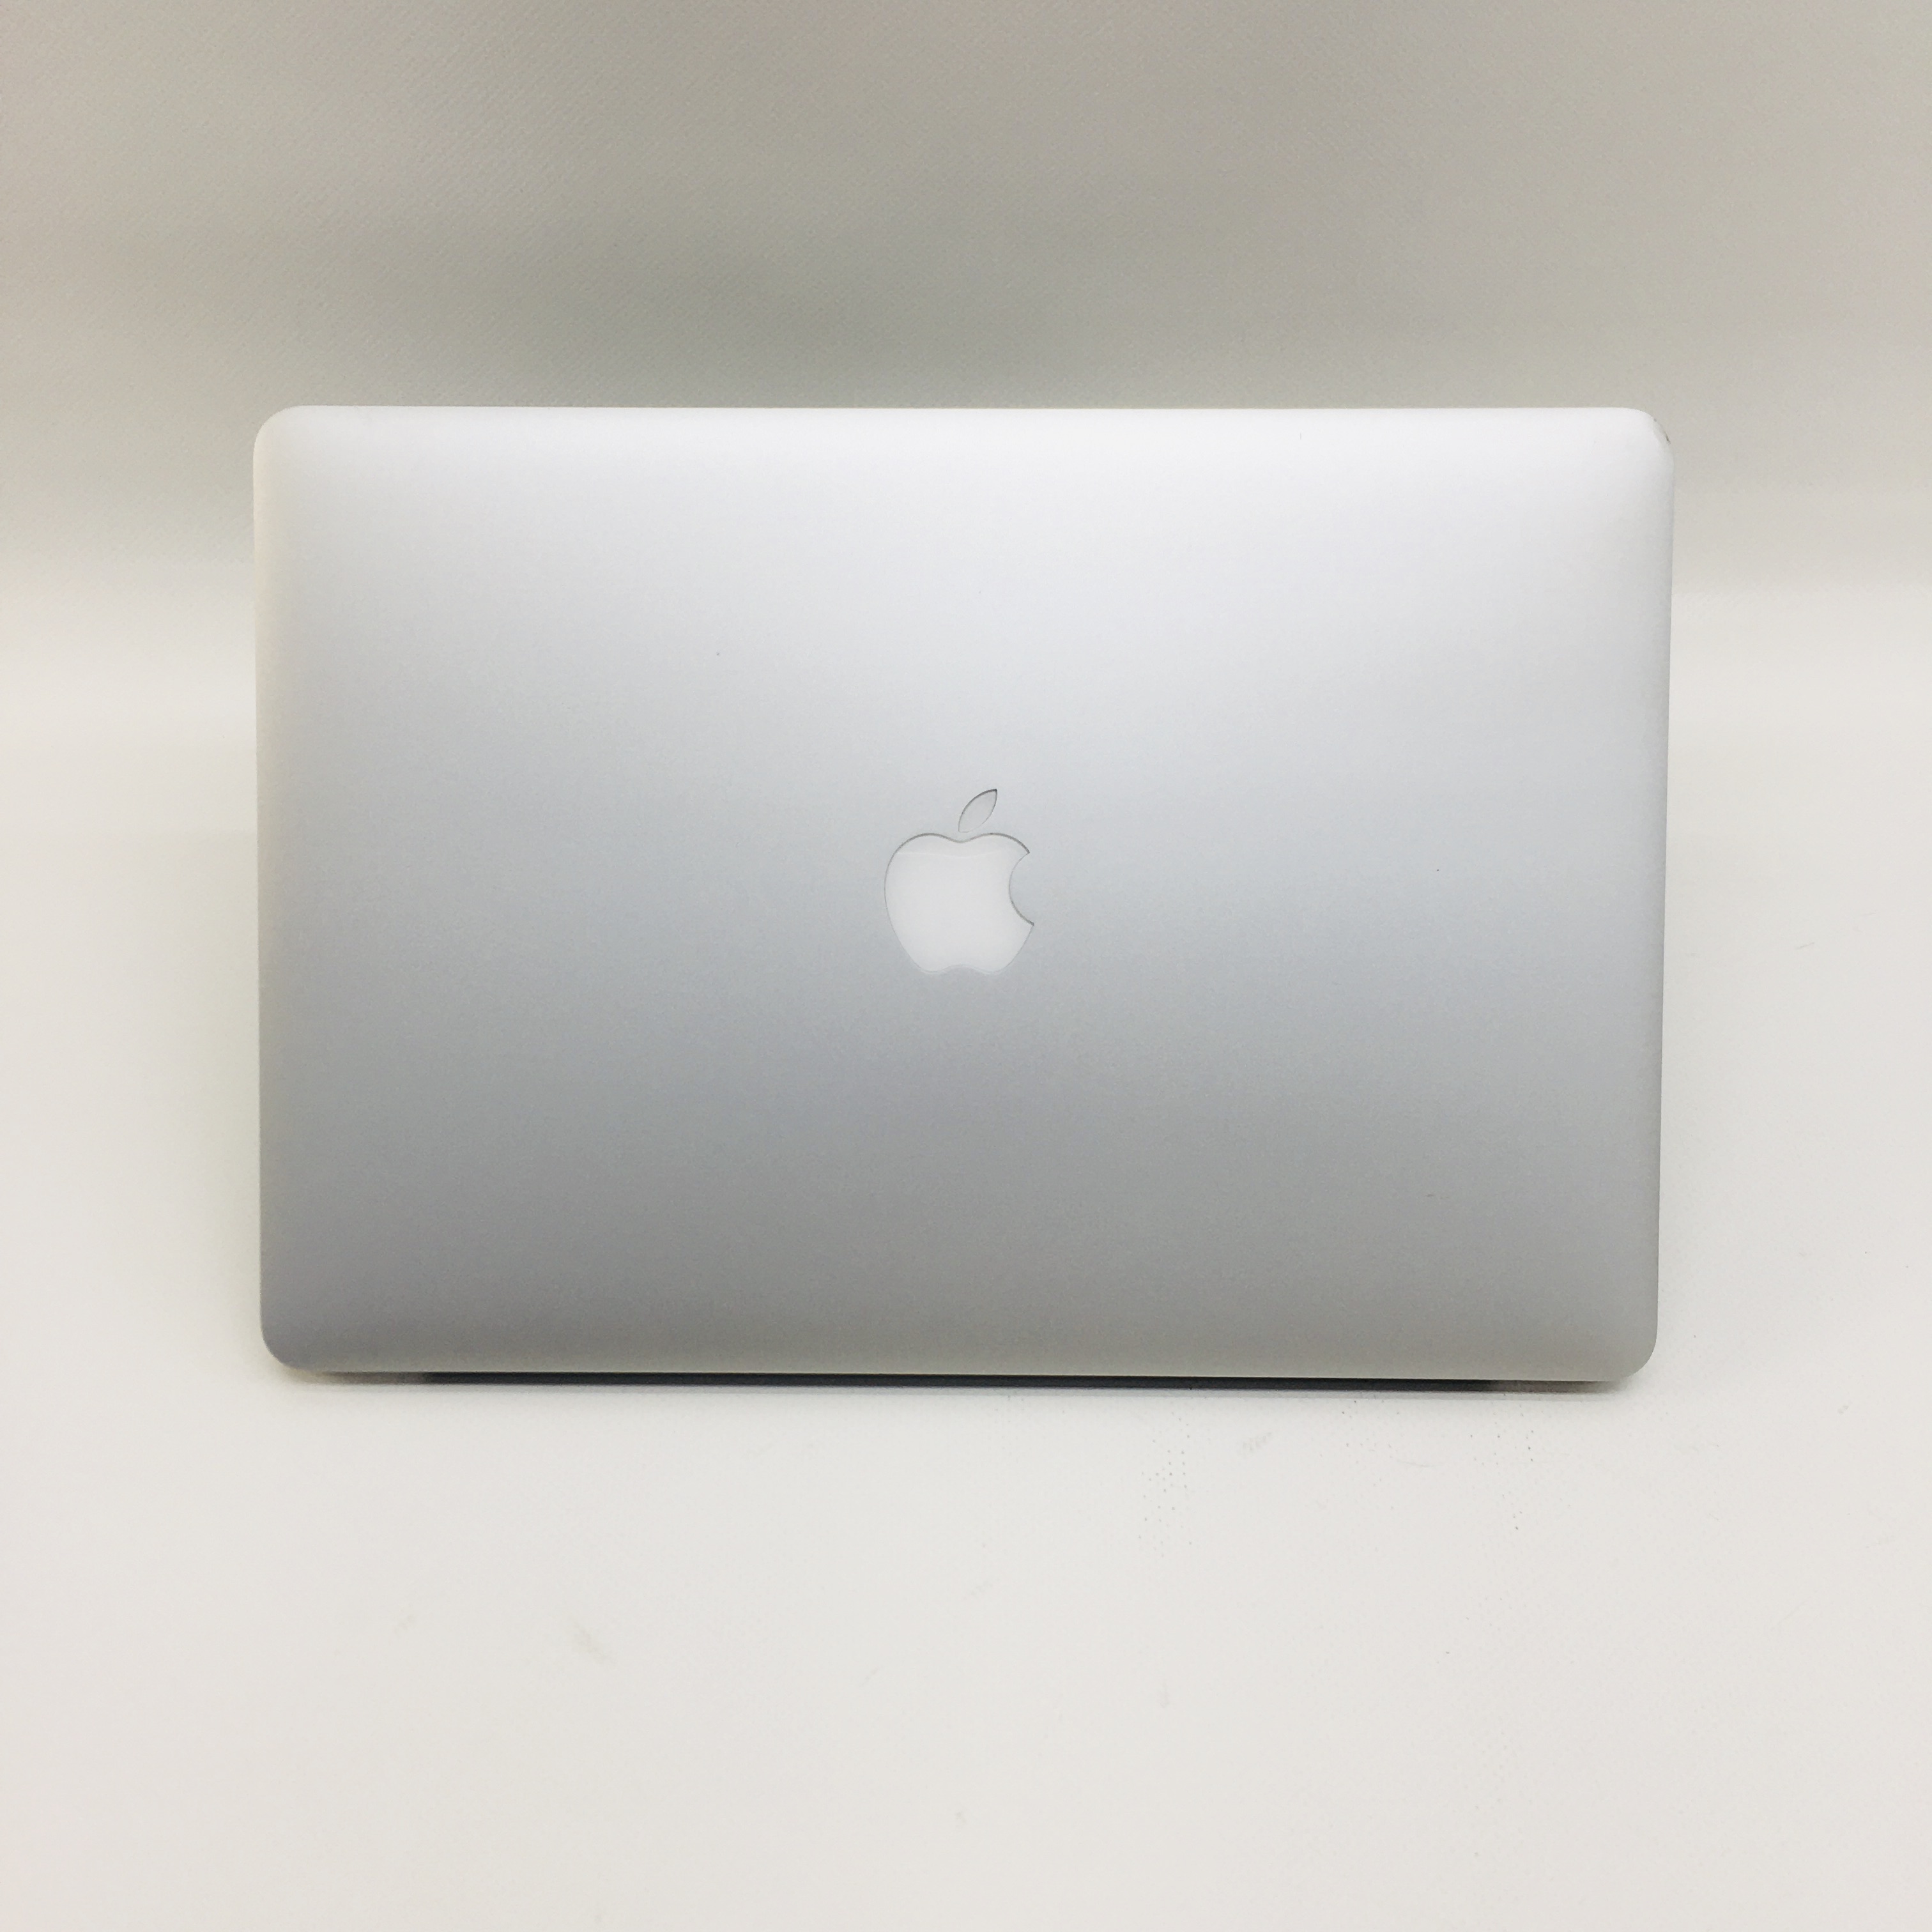 MacBook Pro Retina 15" Mid 2015 (Intel Quad-Core i7 2.5 GHz 16 GB RAM 1 TB SSD), Intel Quad-Core i7 2.5 GHz, 16 GB RAM, 1 TB SSD, image 4